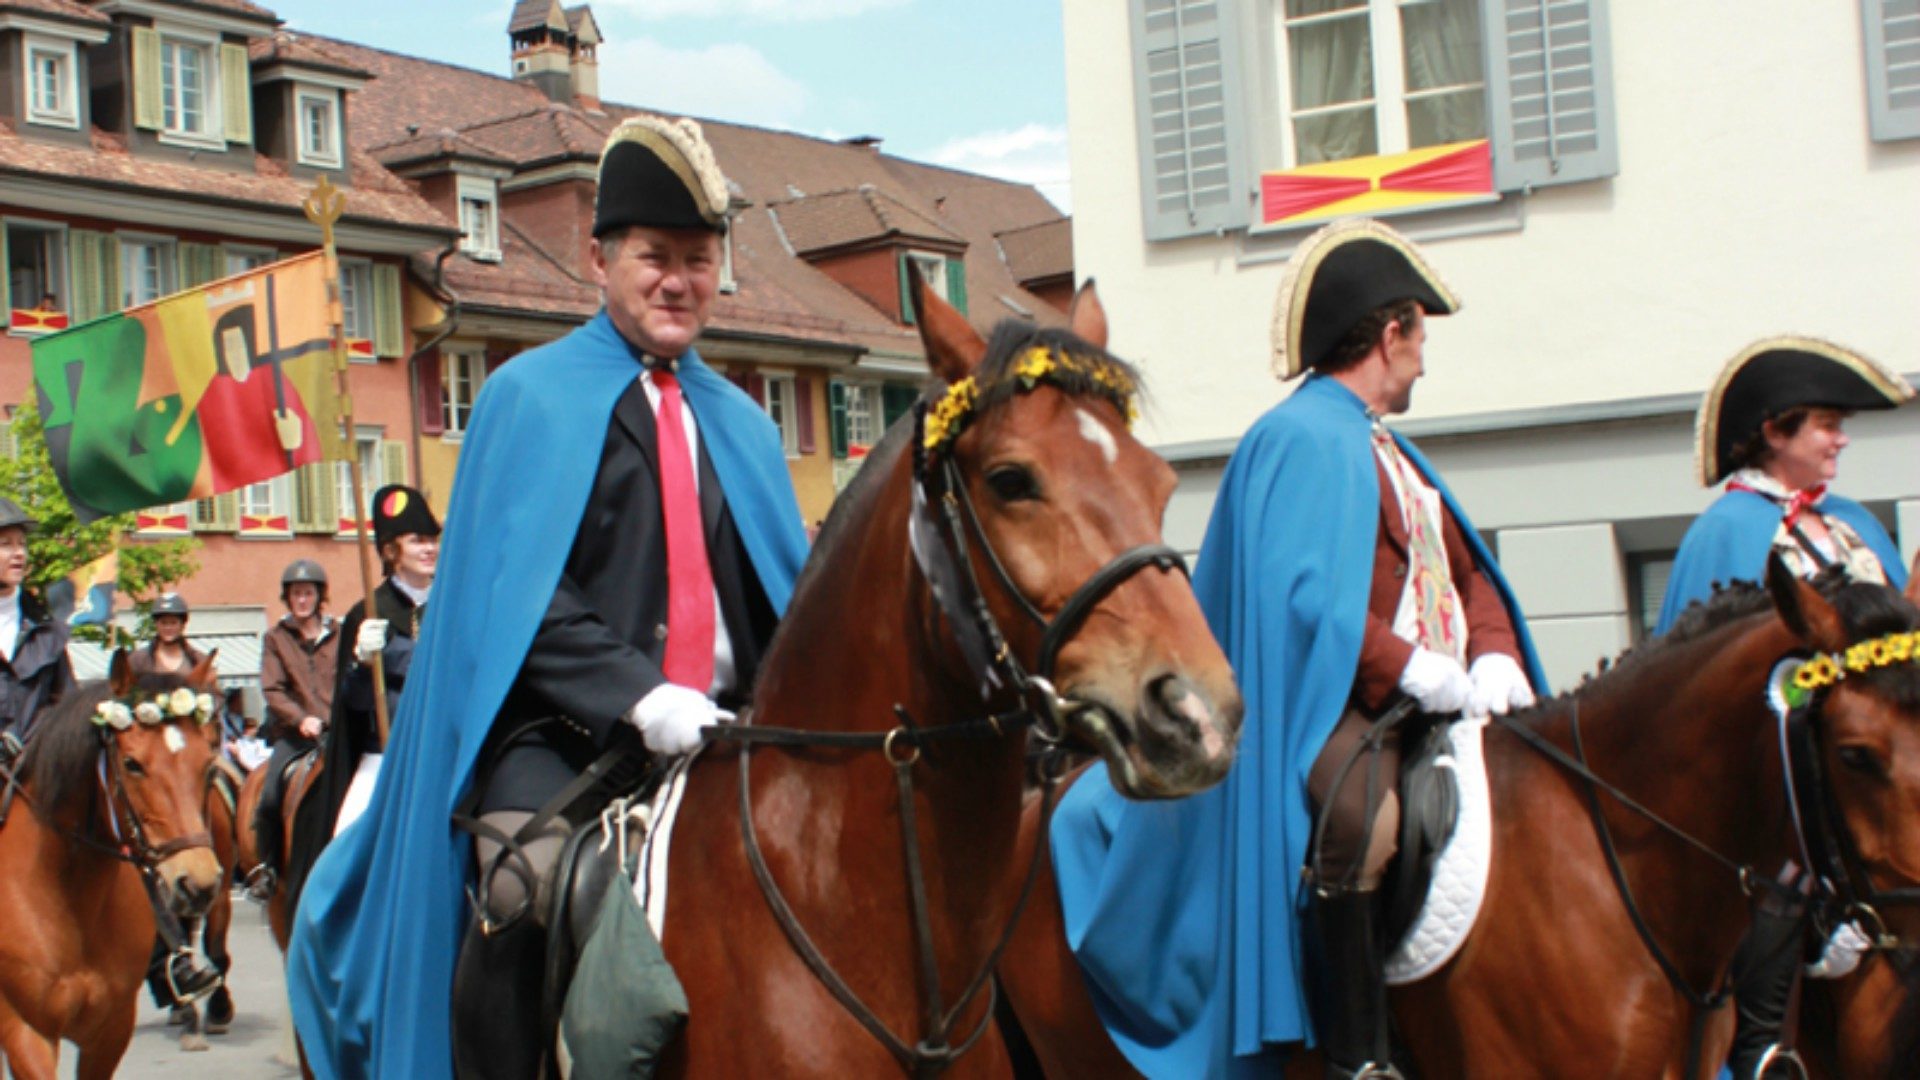 Les chevaux sont à l'honneur lors de la procession de l'Ascension de Beromünster (Photo: Tobias Neuhold/Flickr/CC BY 2.0)